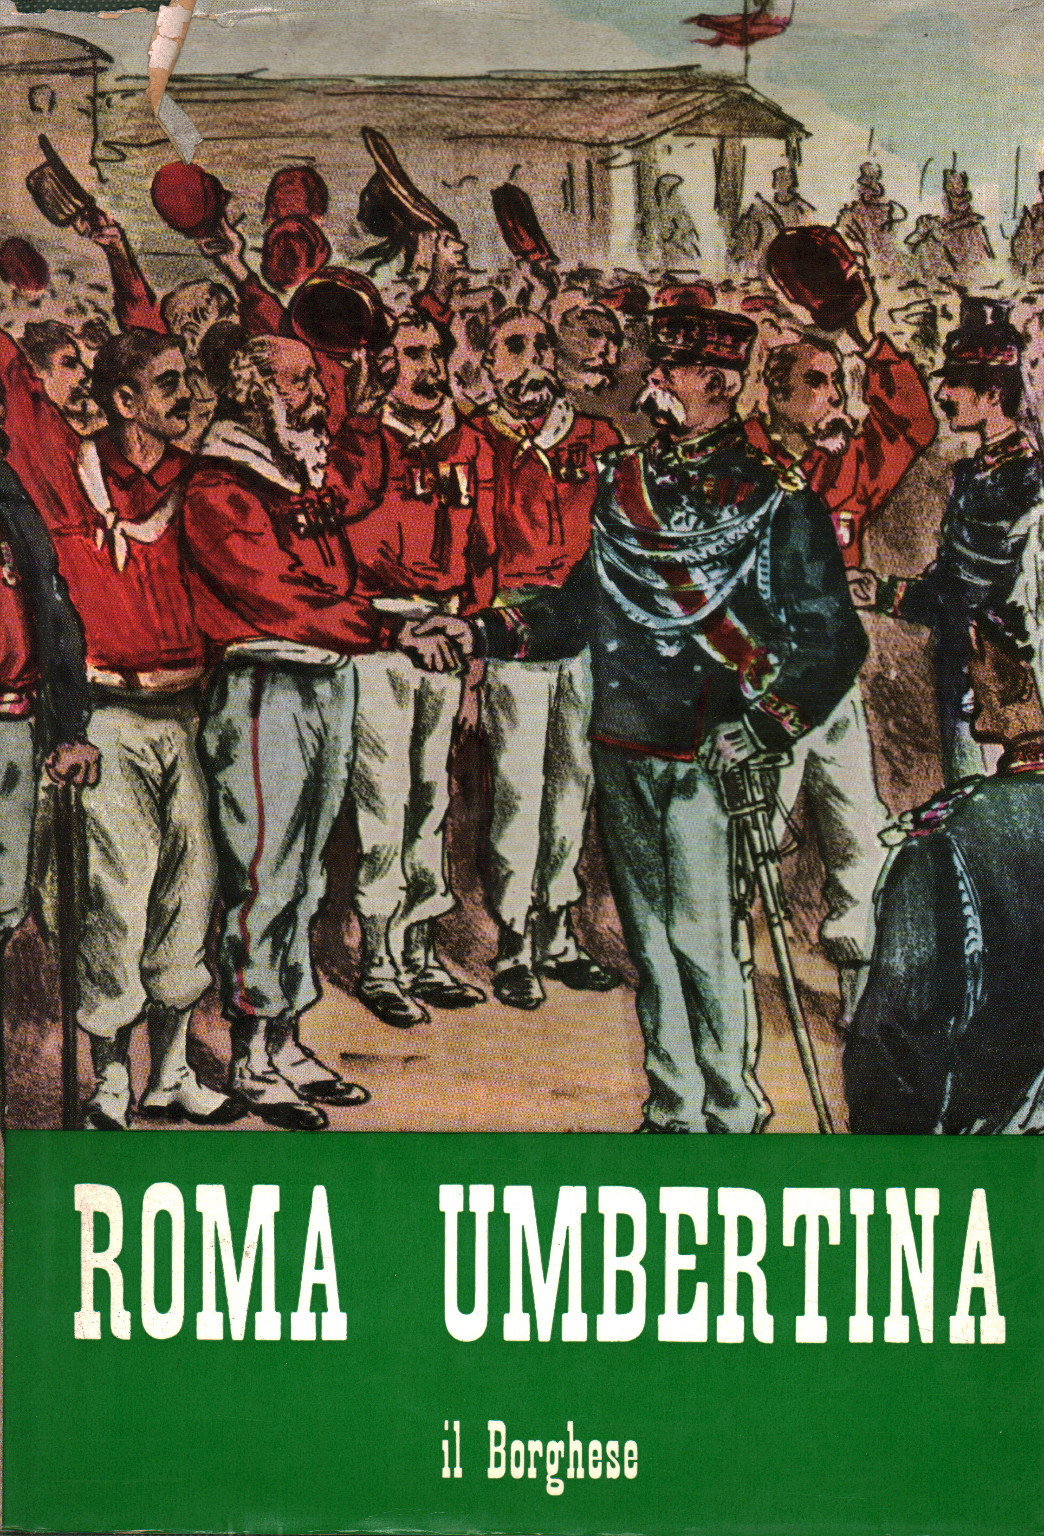 Roma Umbertina, s.a.